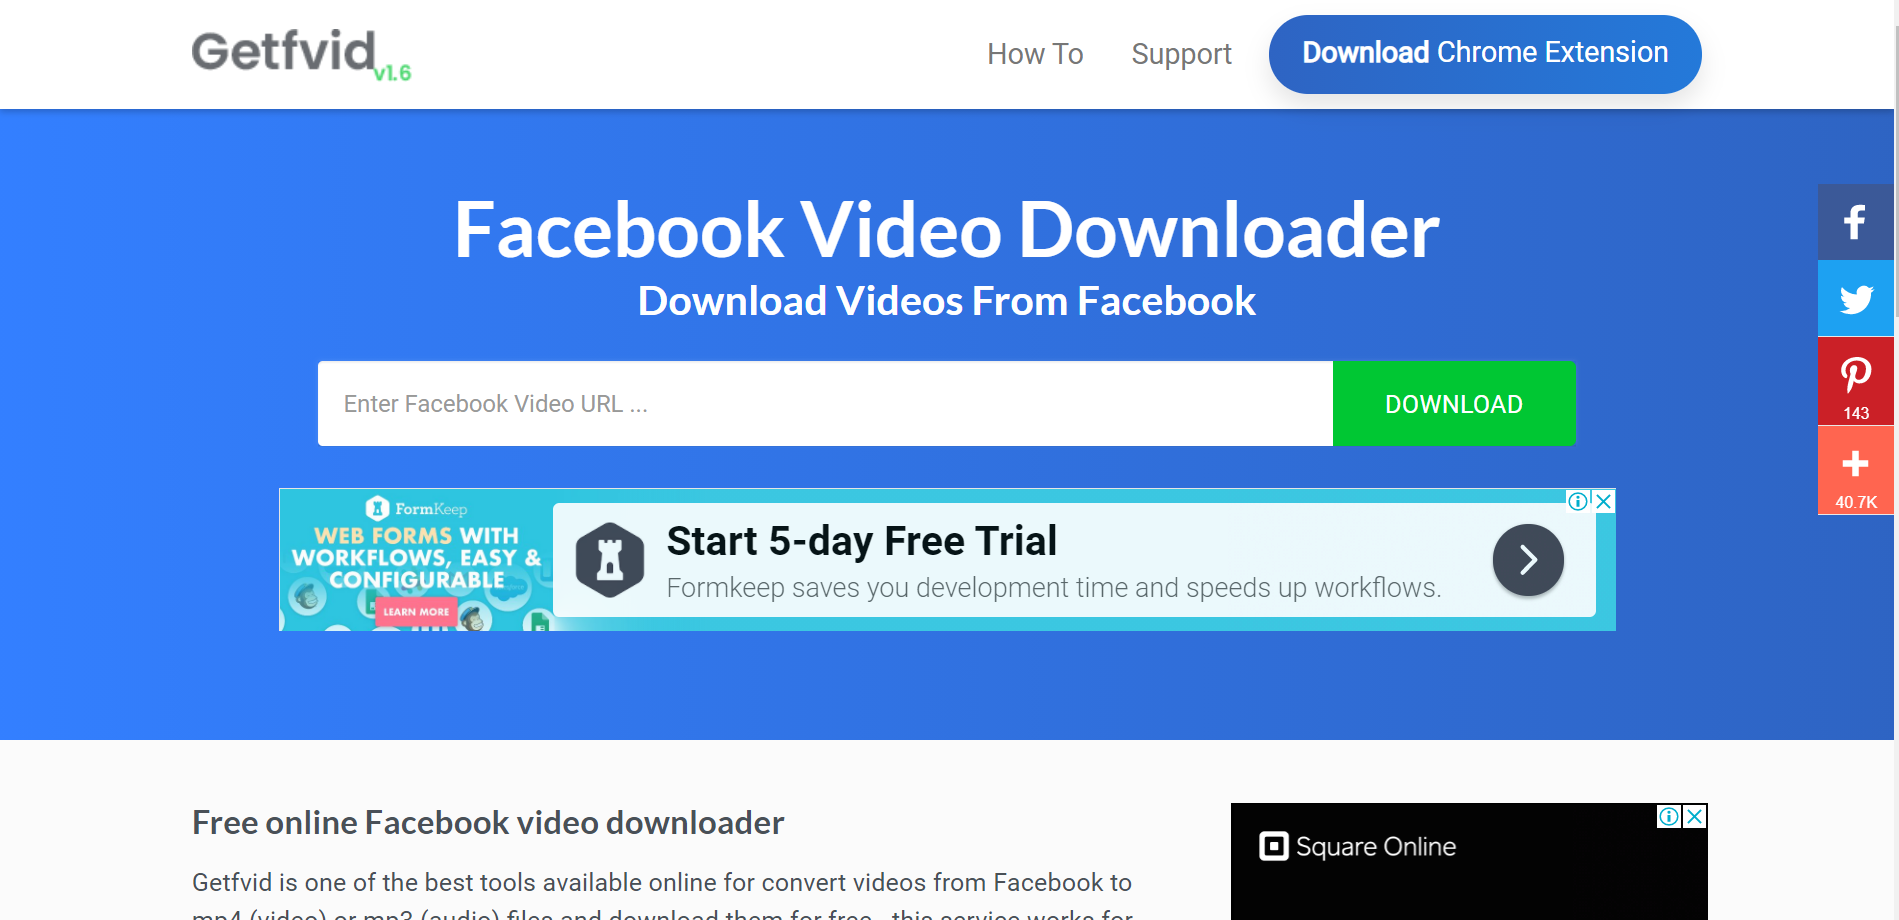 Facebook Video Downloader 6.17.6 download the last version for windows